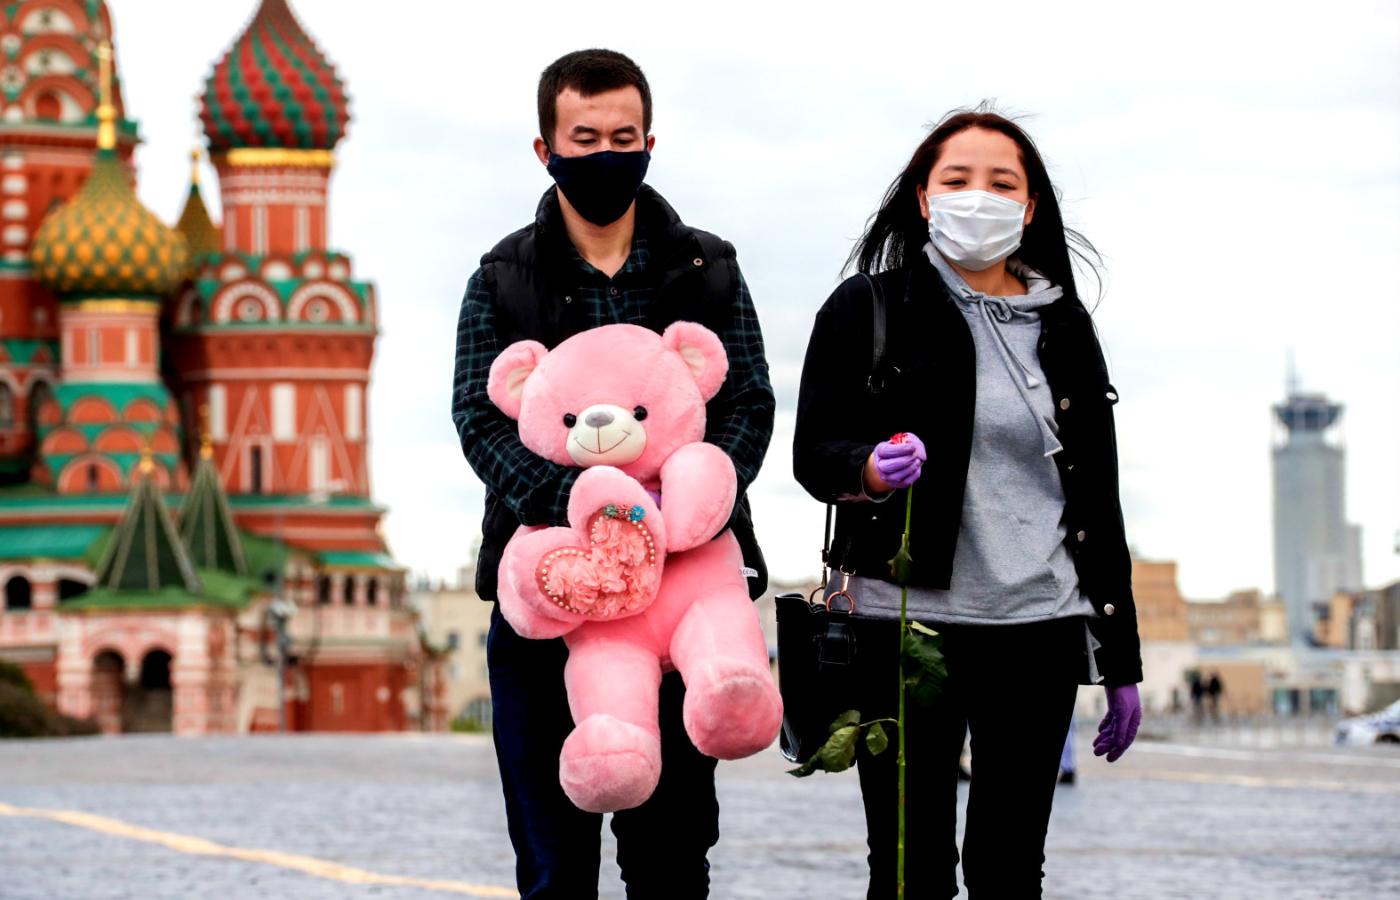 Statystyki wskazują, że Rosja w walce z epidemią radzi sobie najlepiej. Czy rzeczywiście?